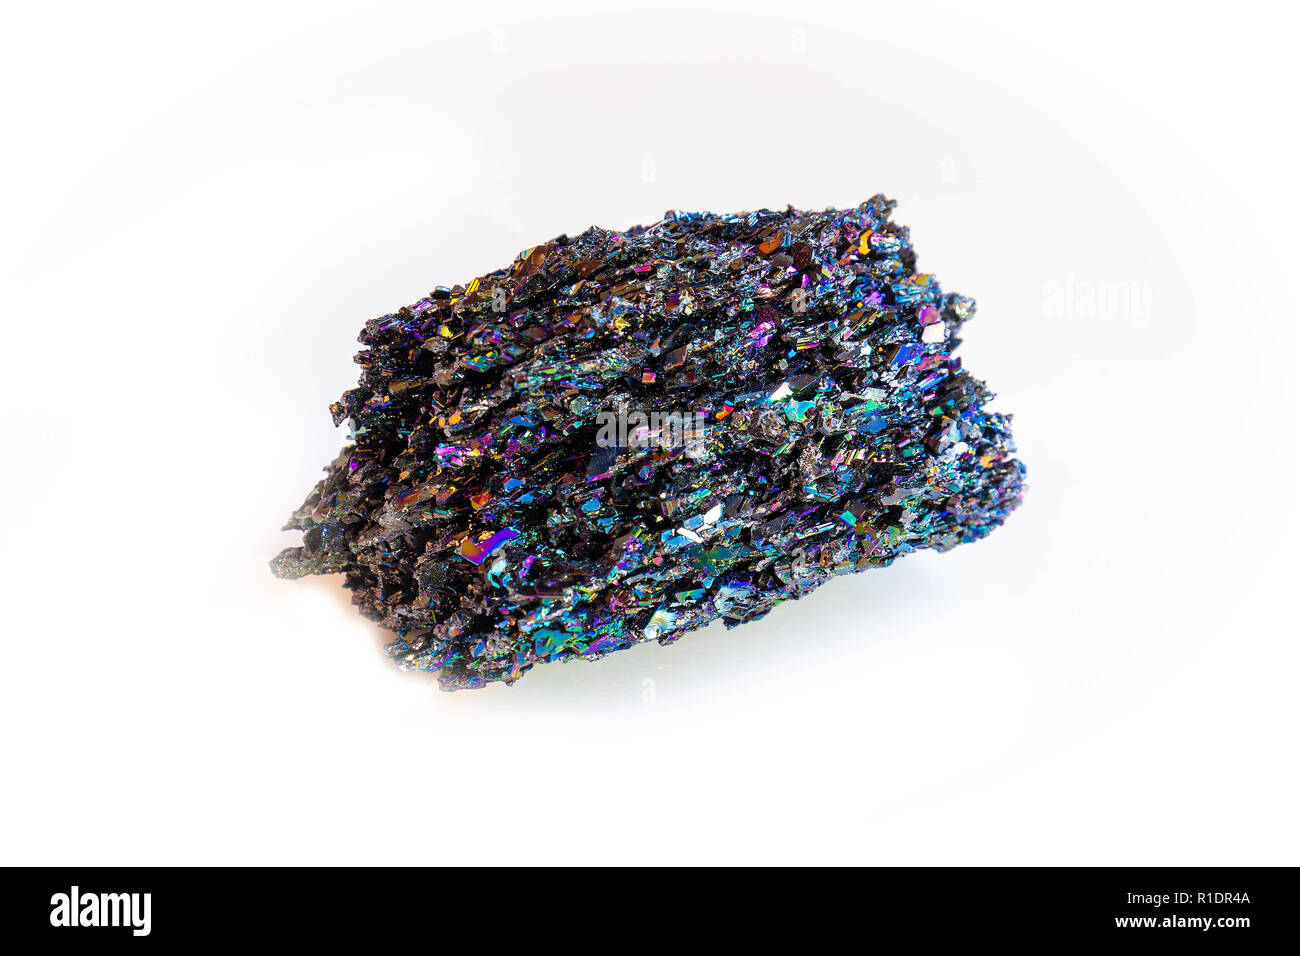 Rare Silicon Carbide Moissanite mineral colorful stone Stock Photo